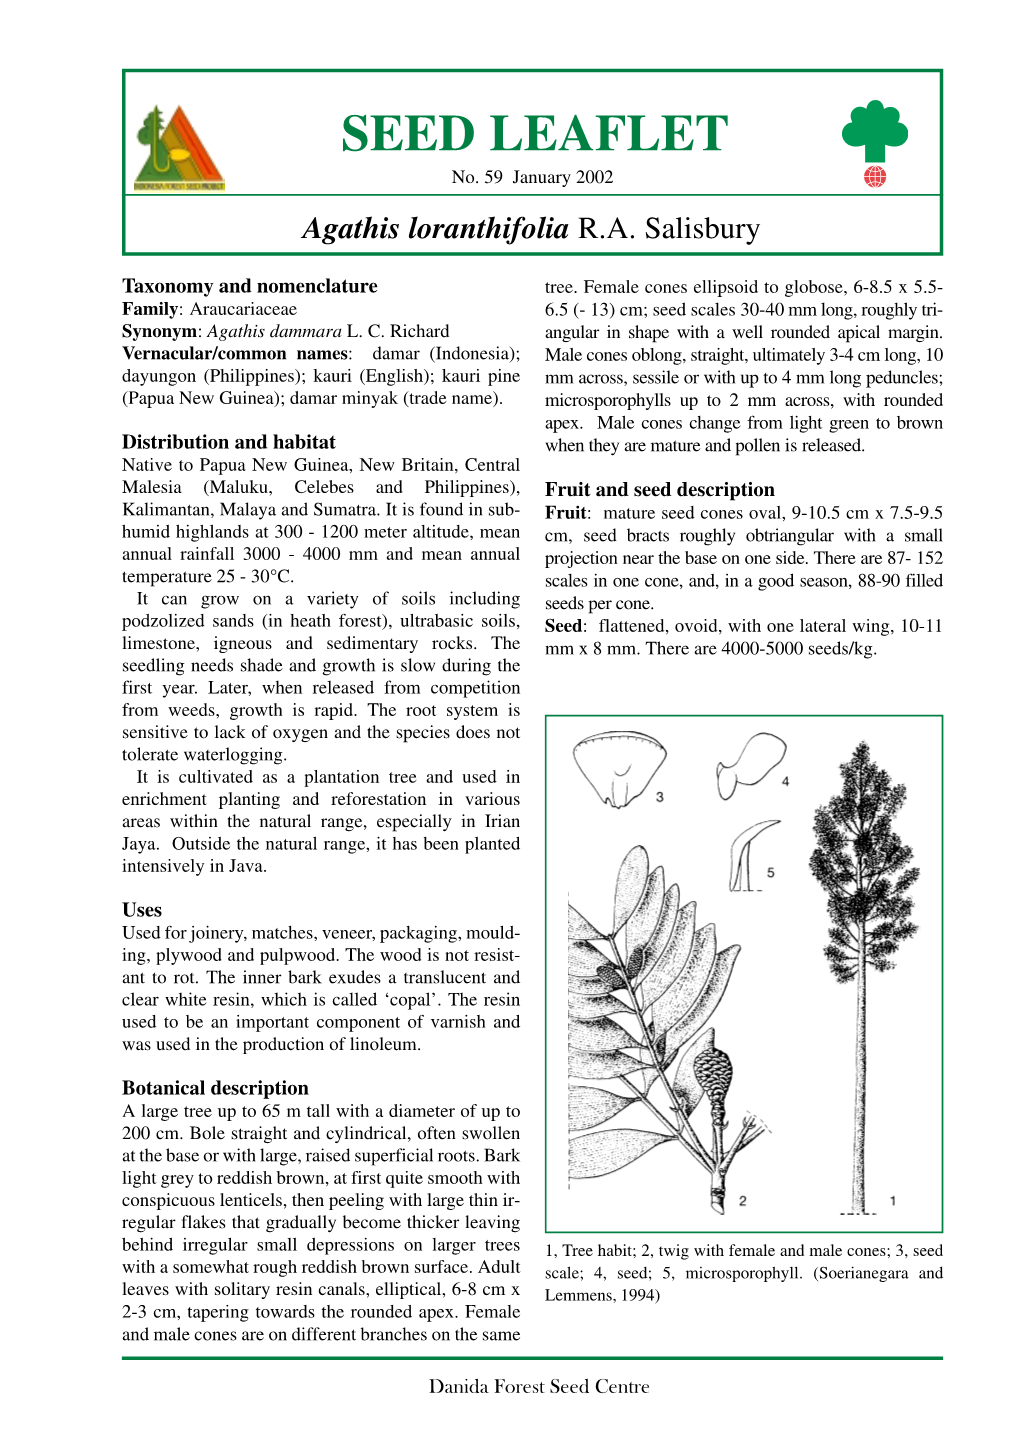 Agathis Loranthifolia R.A